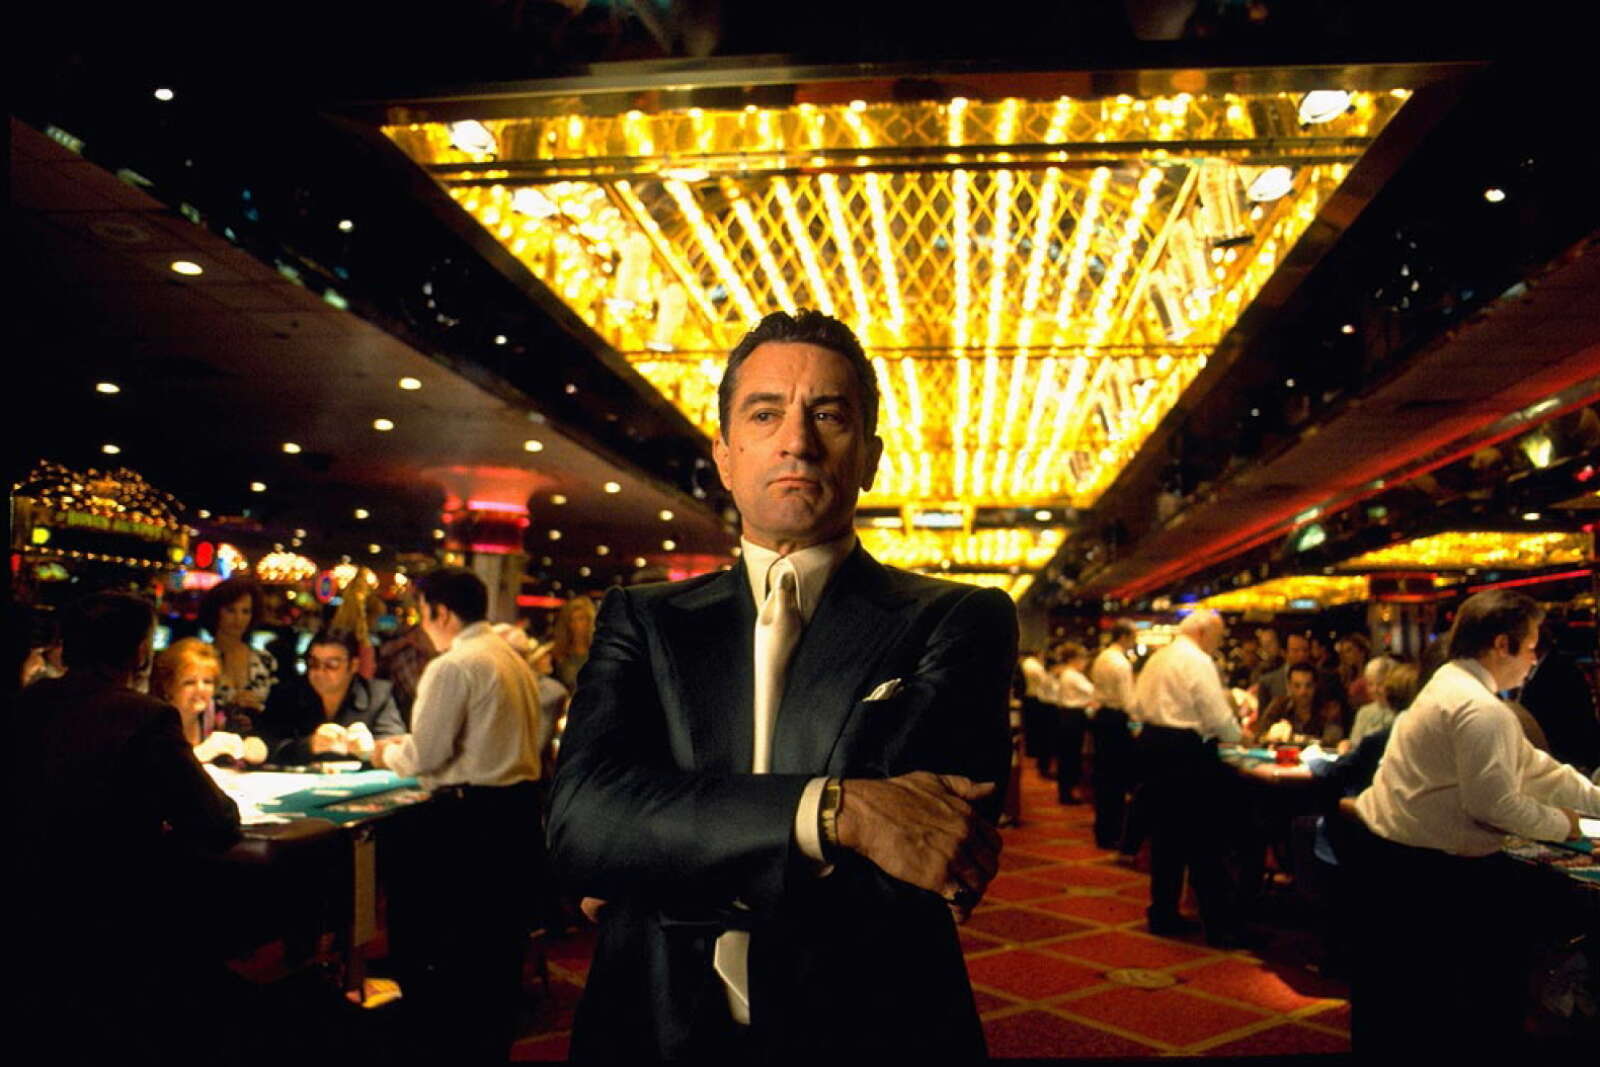 casino film